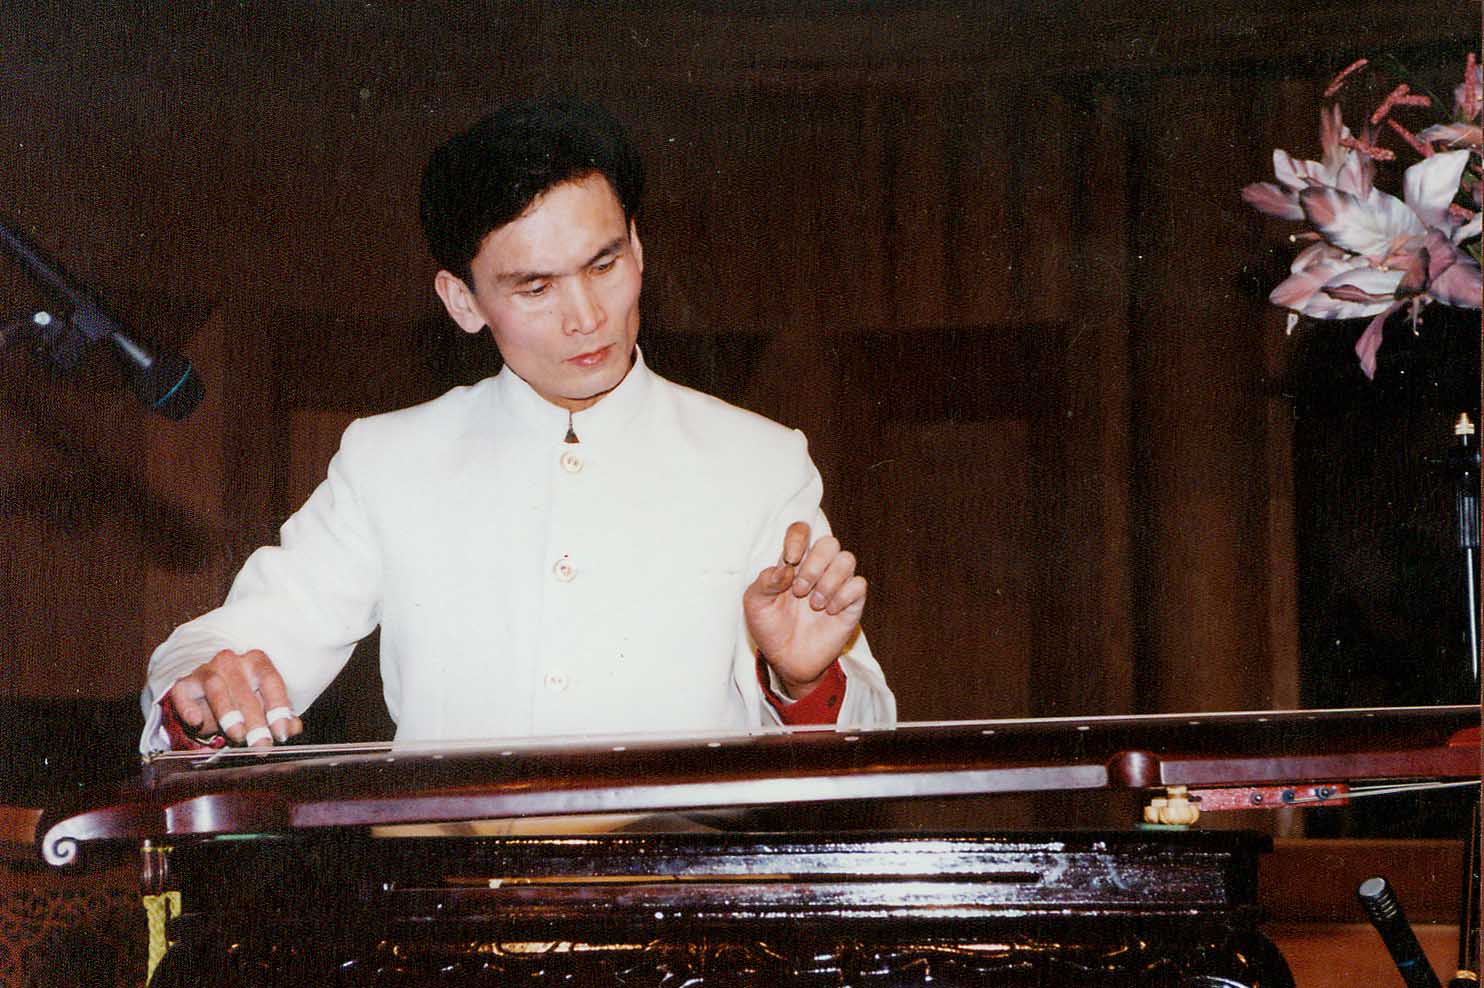 1998年 張松古箏古琴音樂會 哈爾濱音樂廳